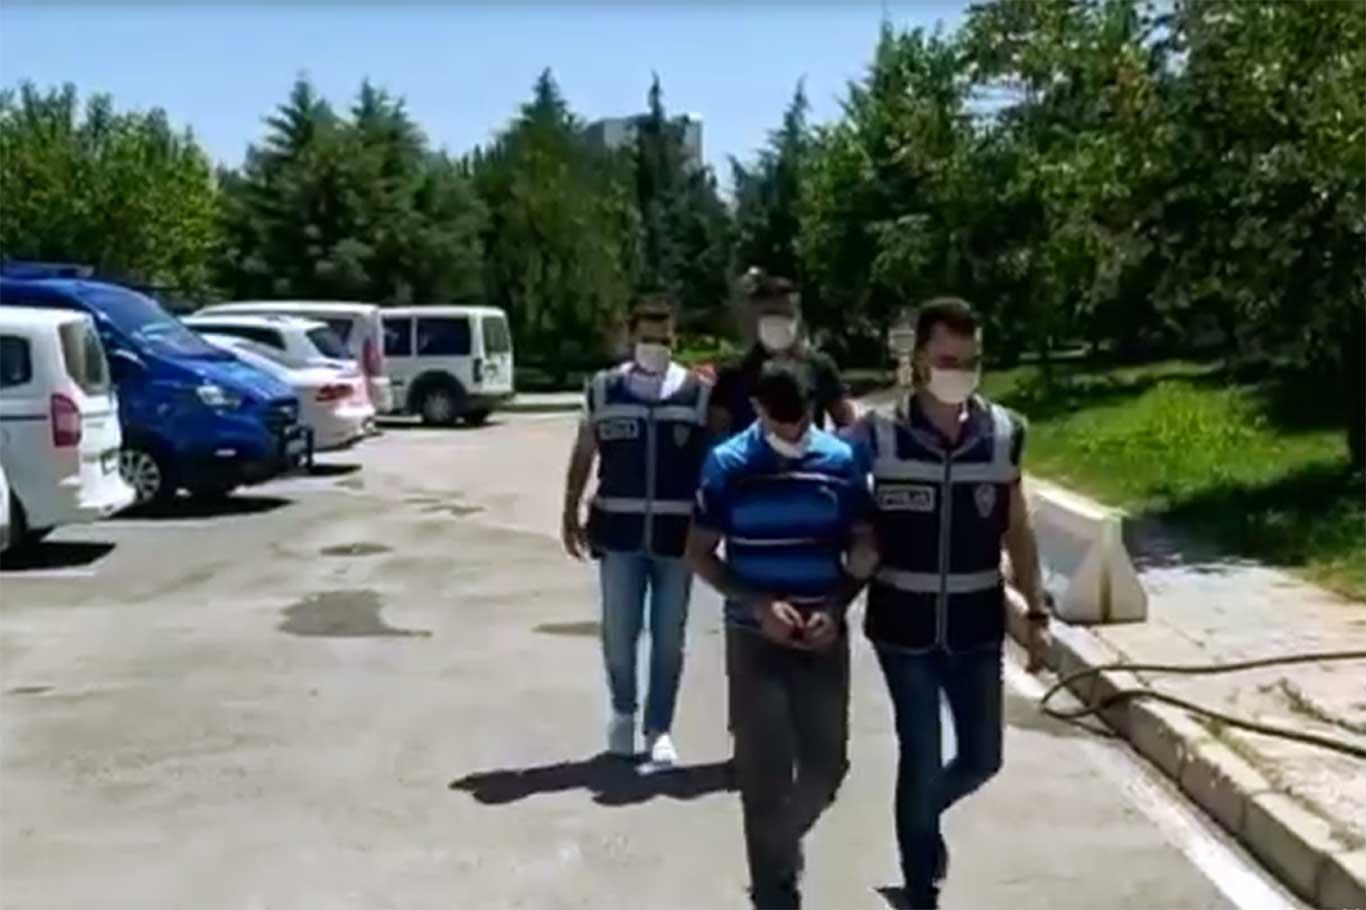 Gaziantep'te 2 kapkaç şüphelisi tutuklandı 